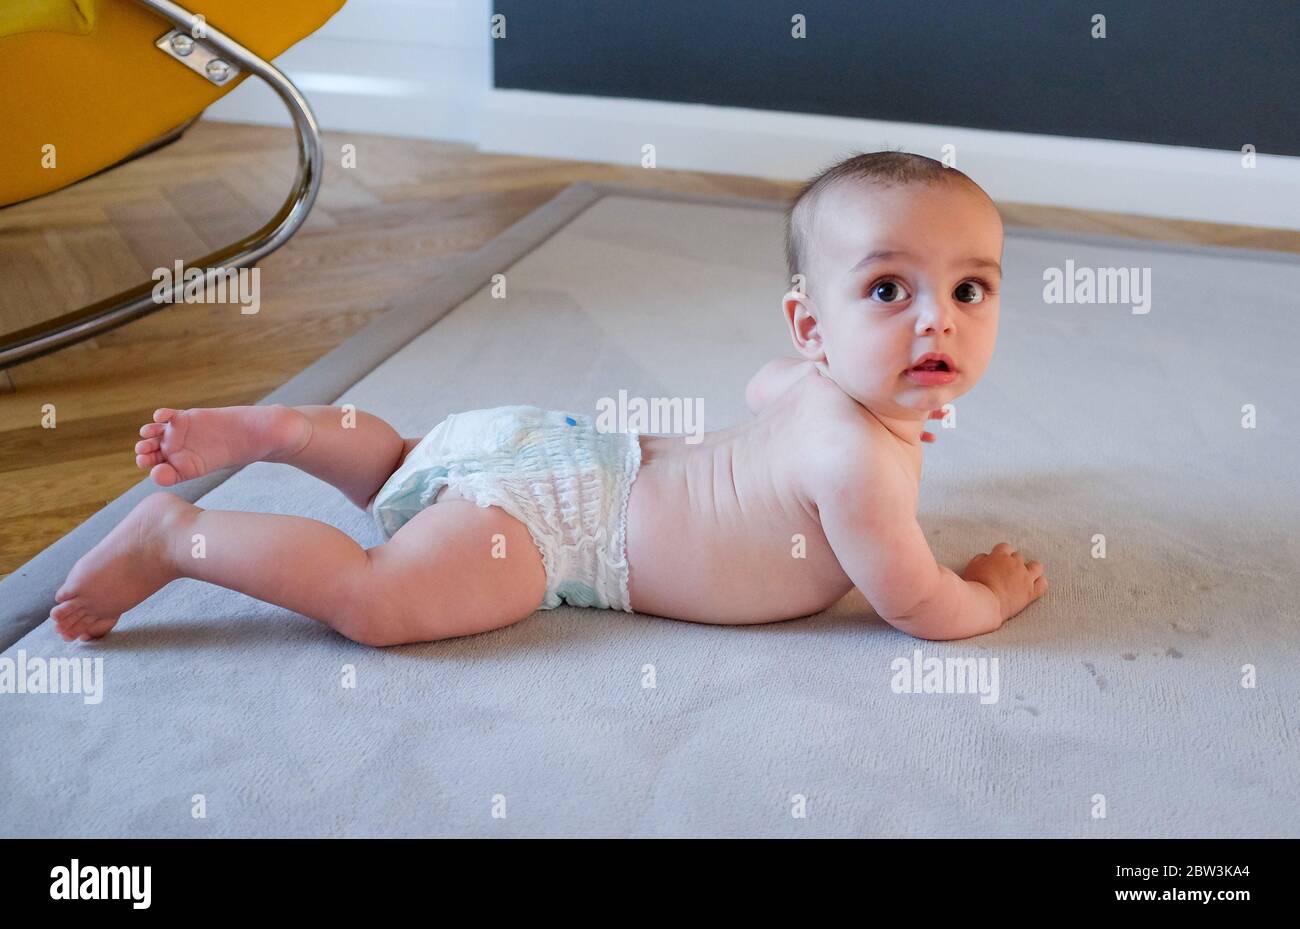 Jeune garçon de 6 mois dans une couches sur un tapis Banque D'Images